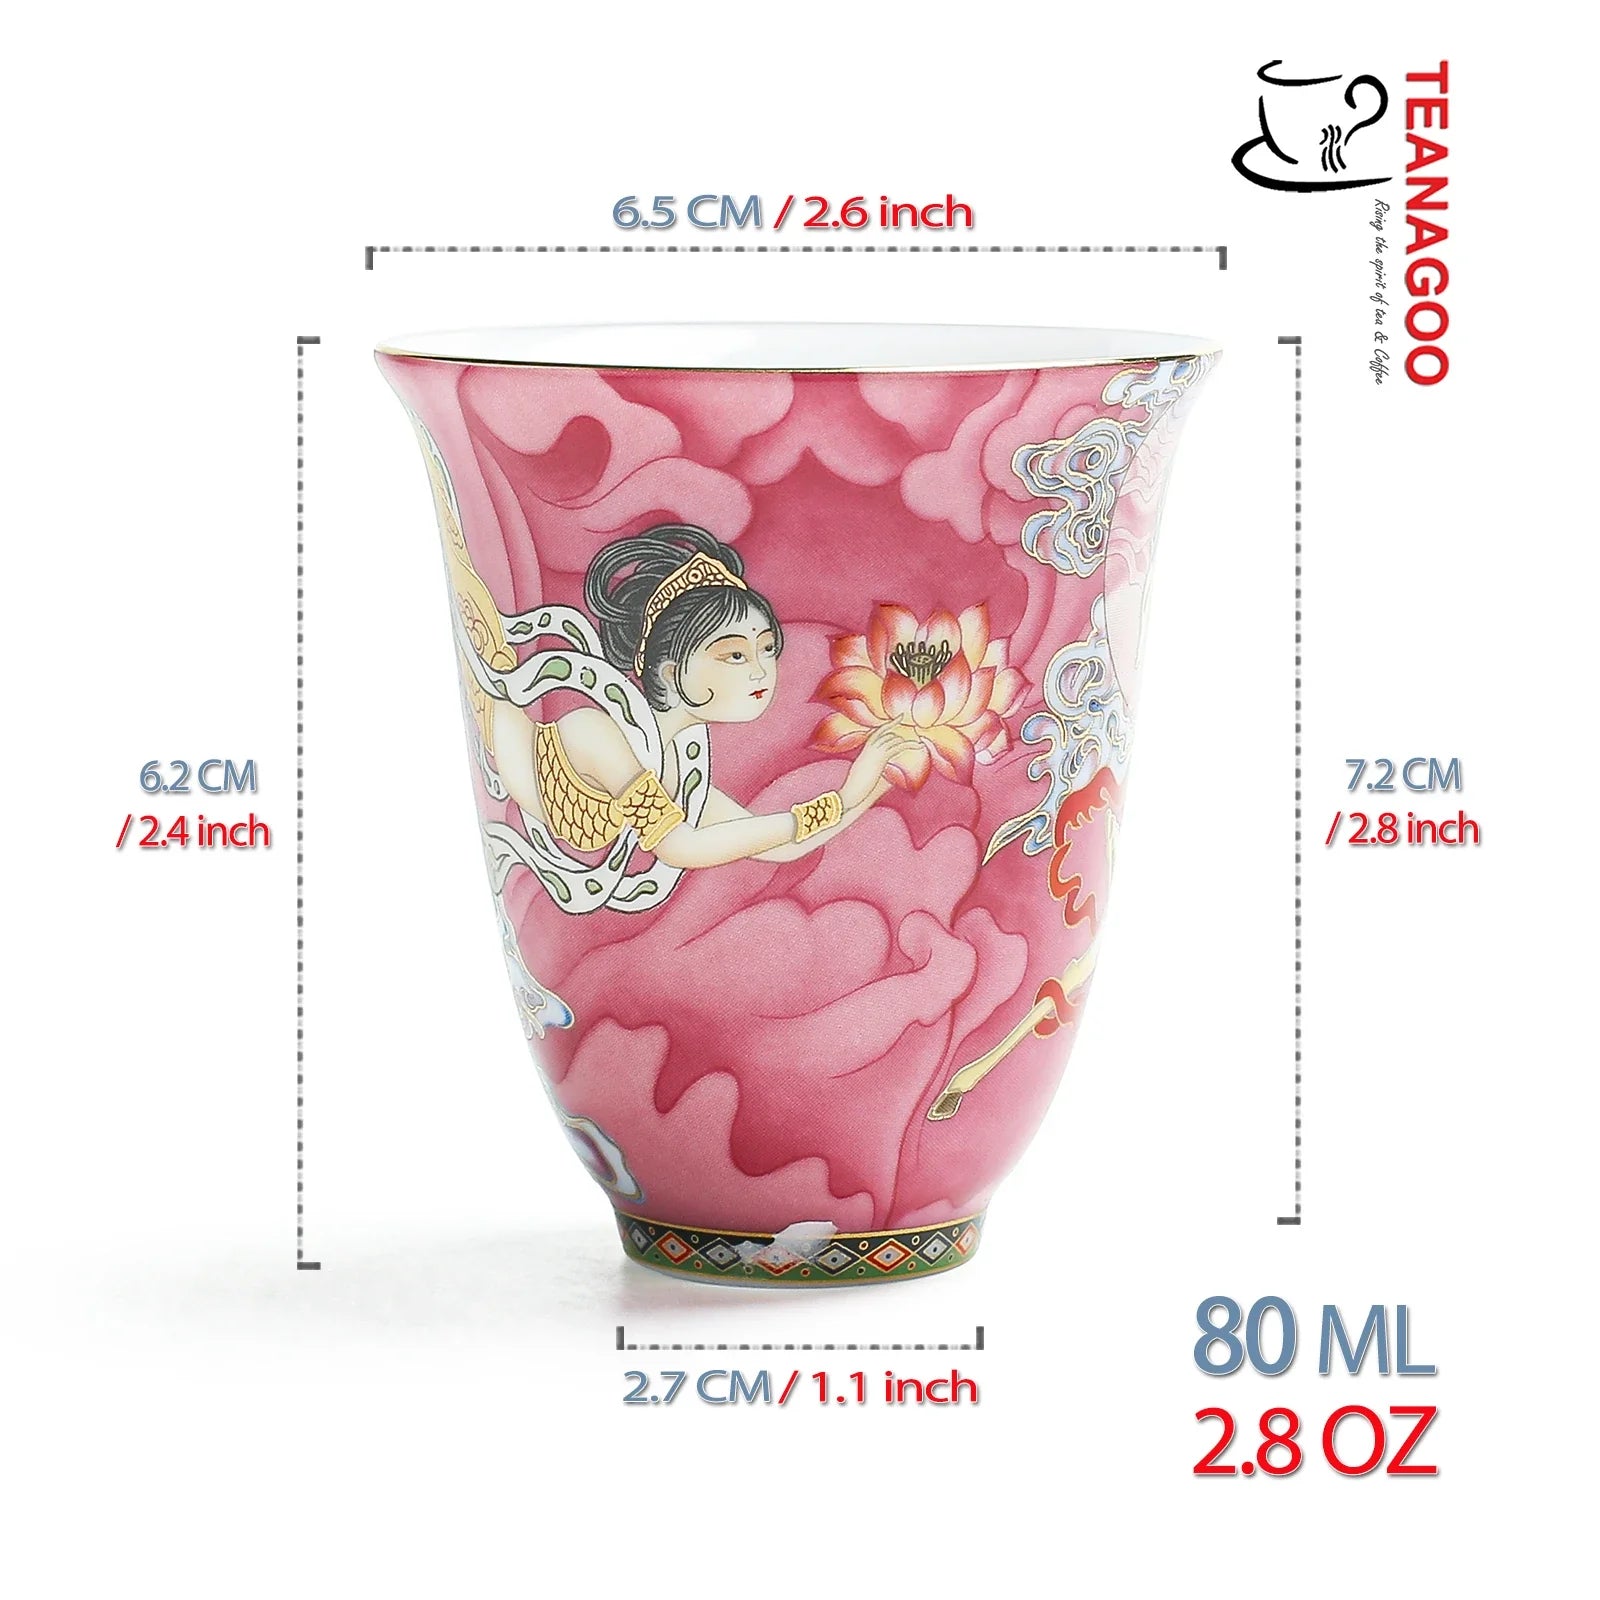 handmade porcelain teacup 80ml Chinese myth fairy ceramic cup